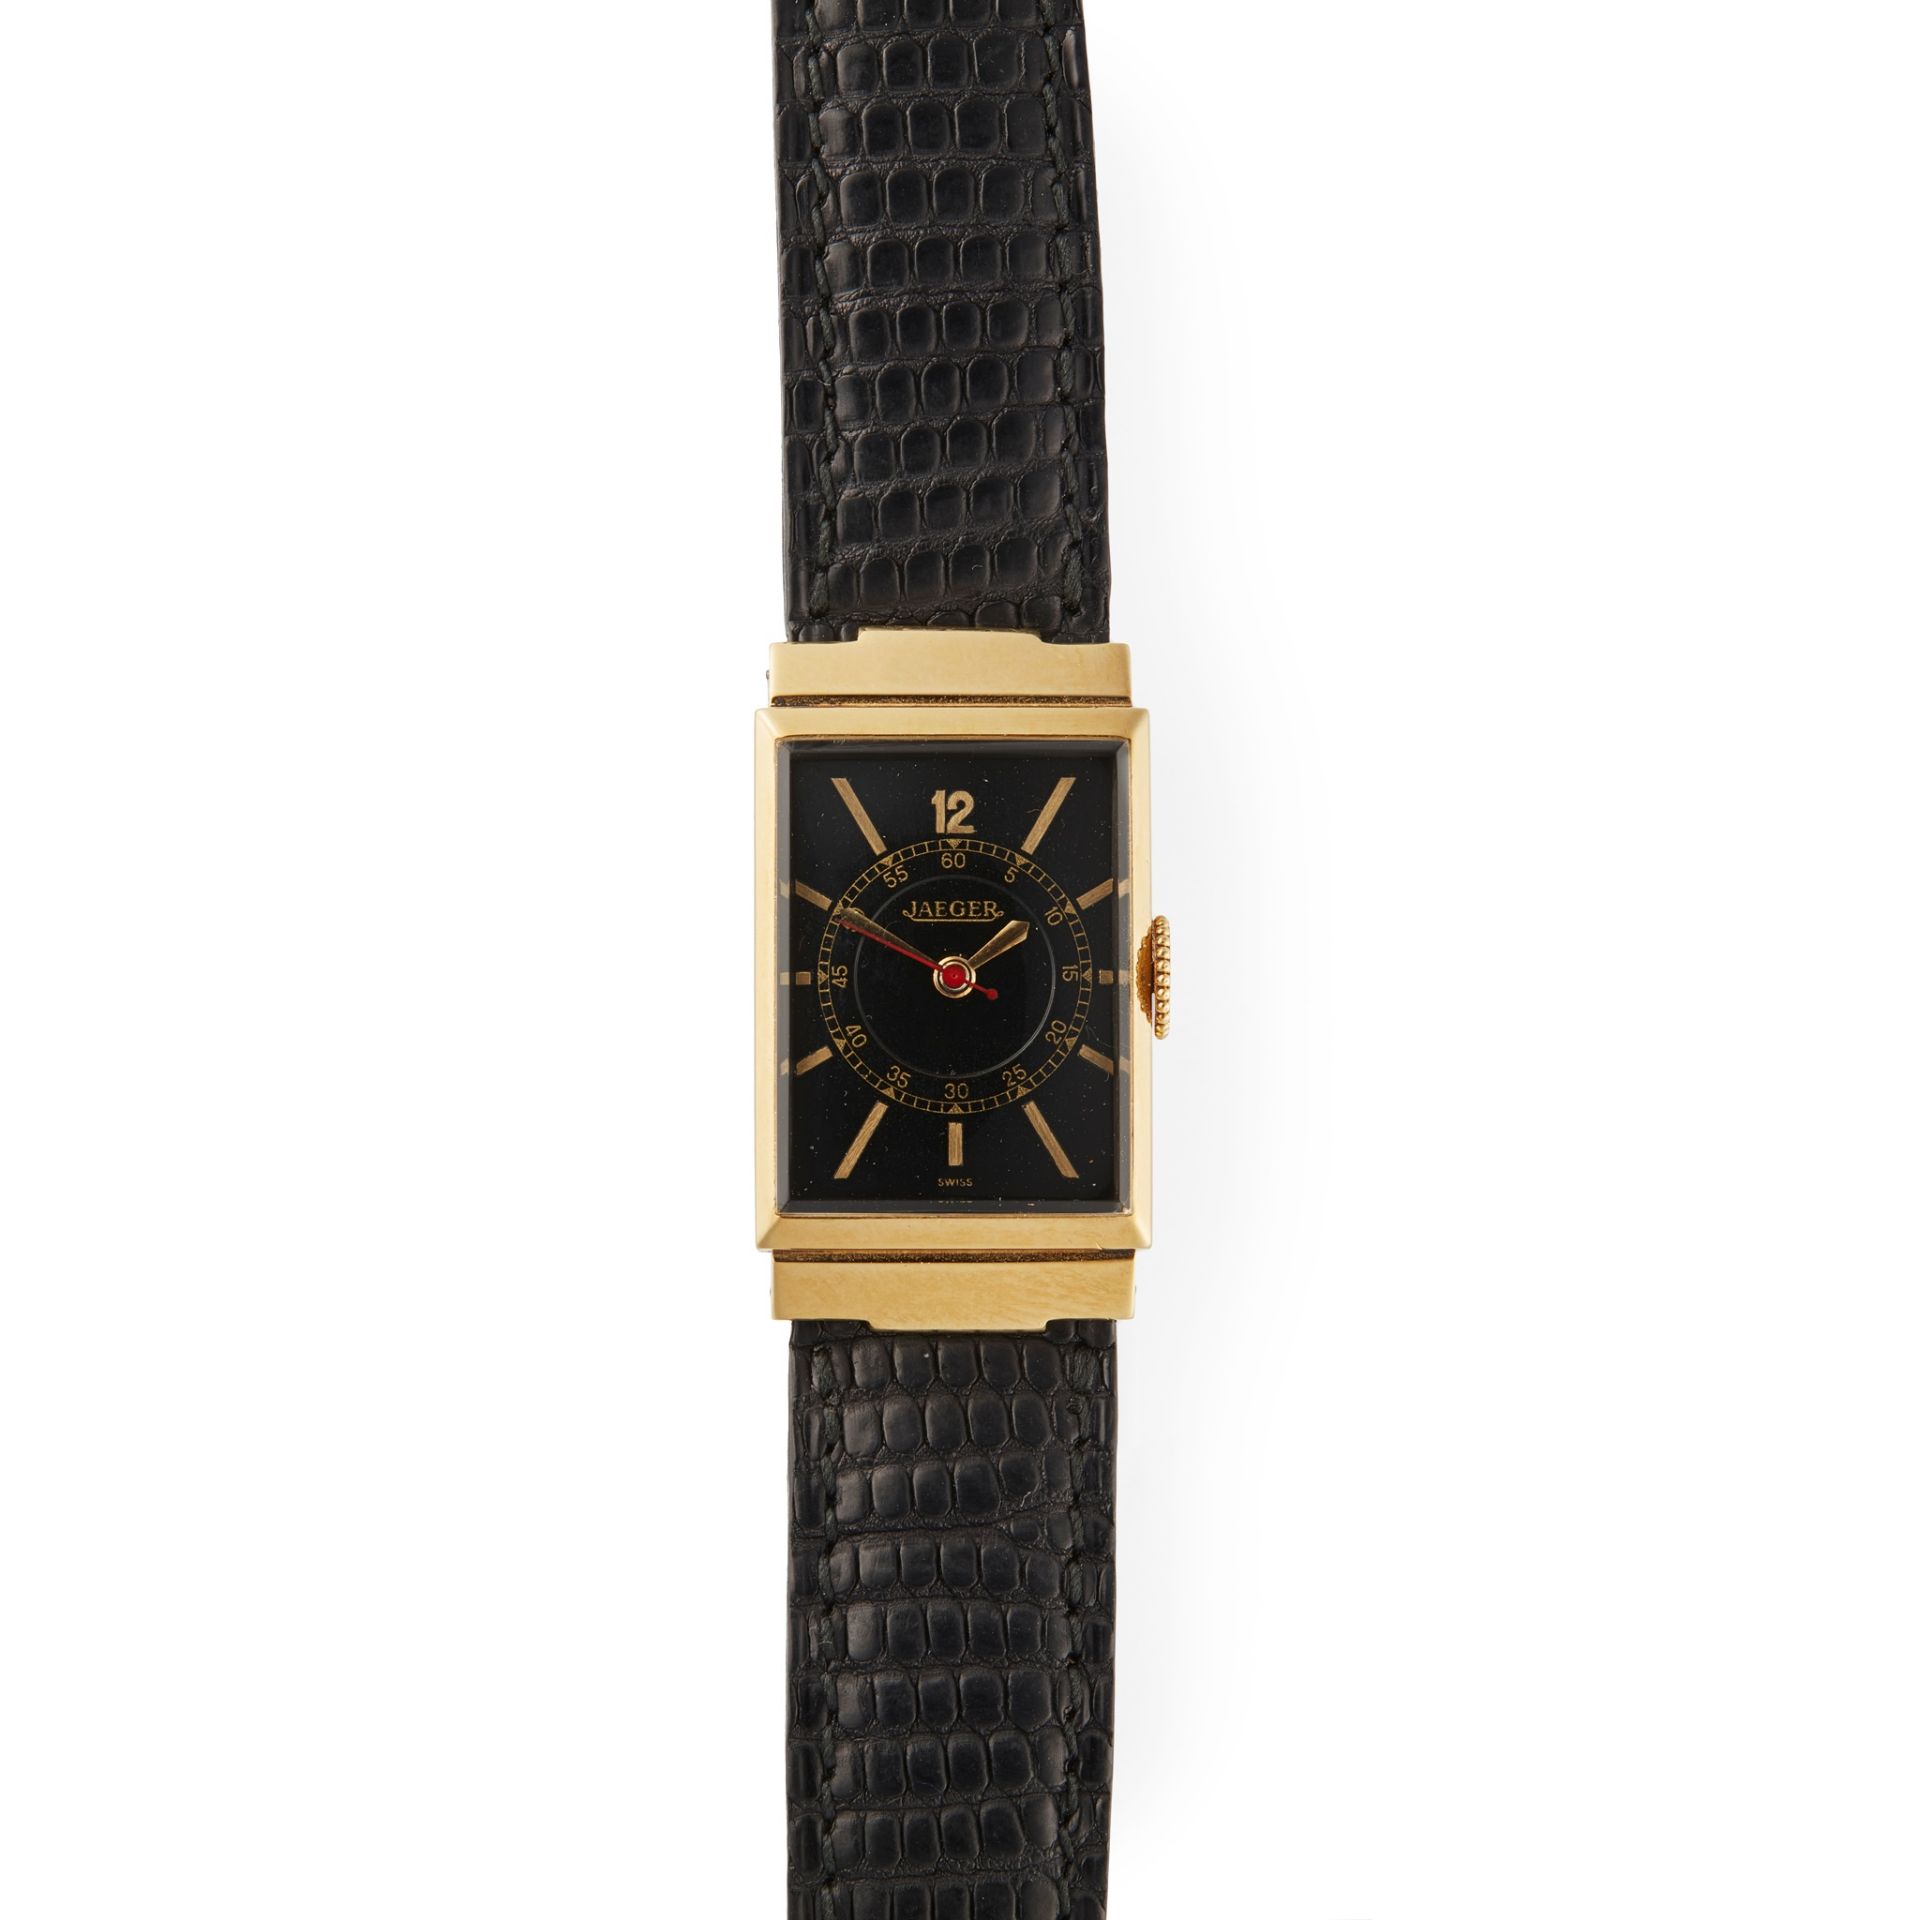 Jaeger-LeCoultre: a gentleman's gold wrist watch